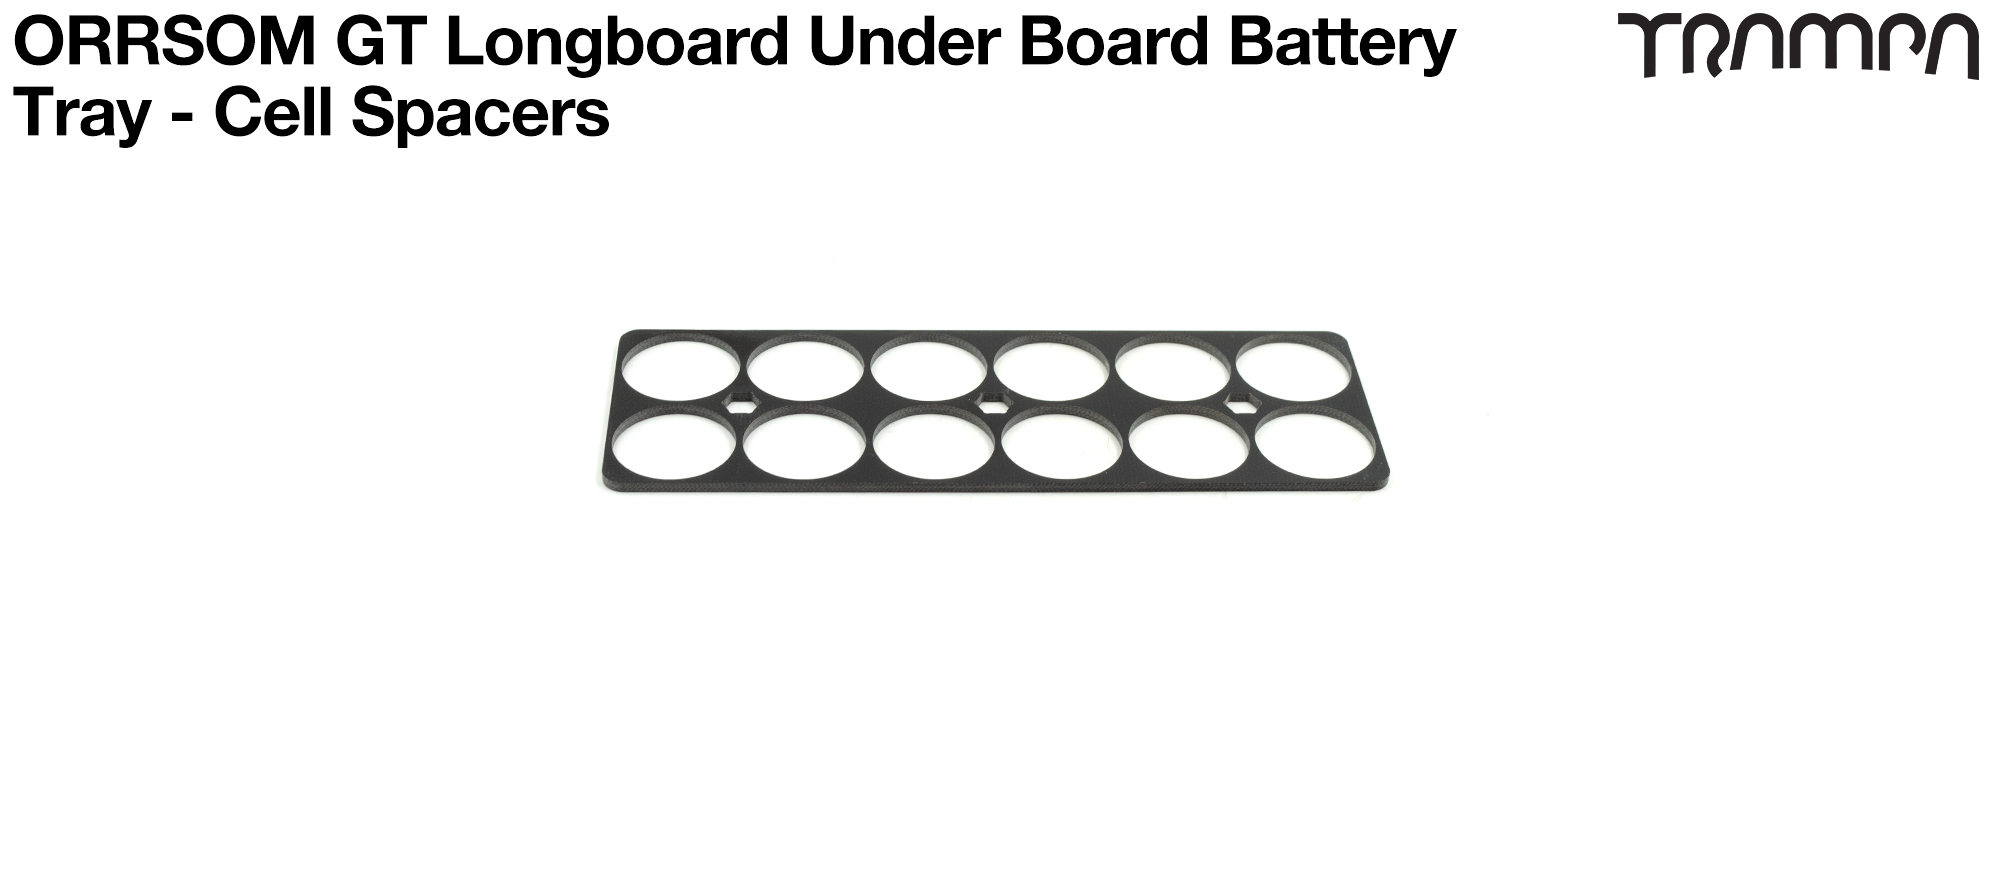 ORRSOM GT Longboard Under board Battery Tray - CELL SPACERS